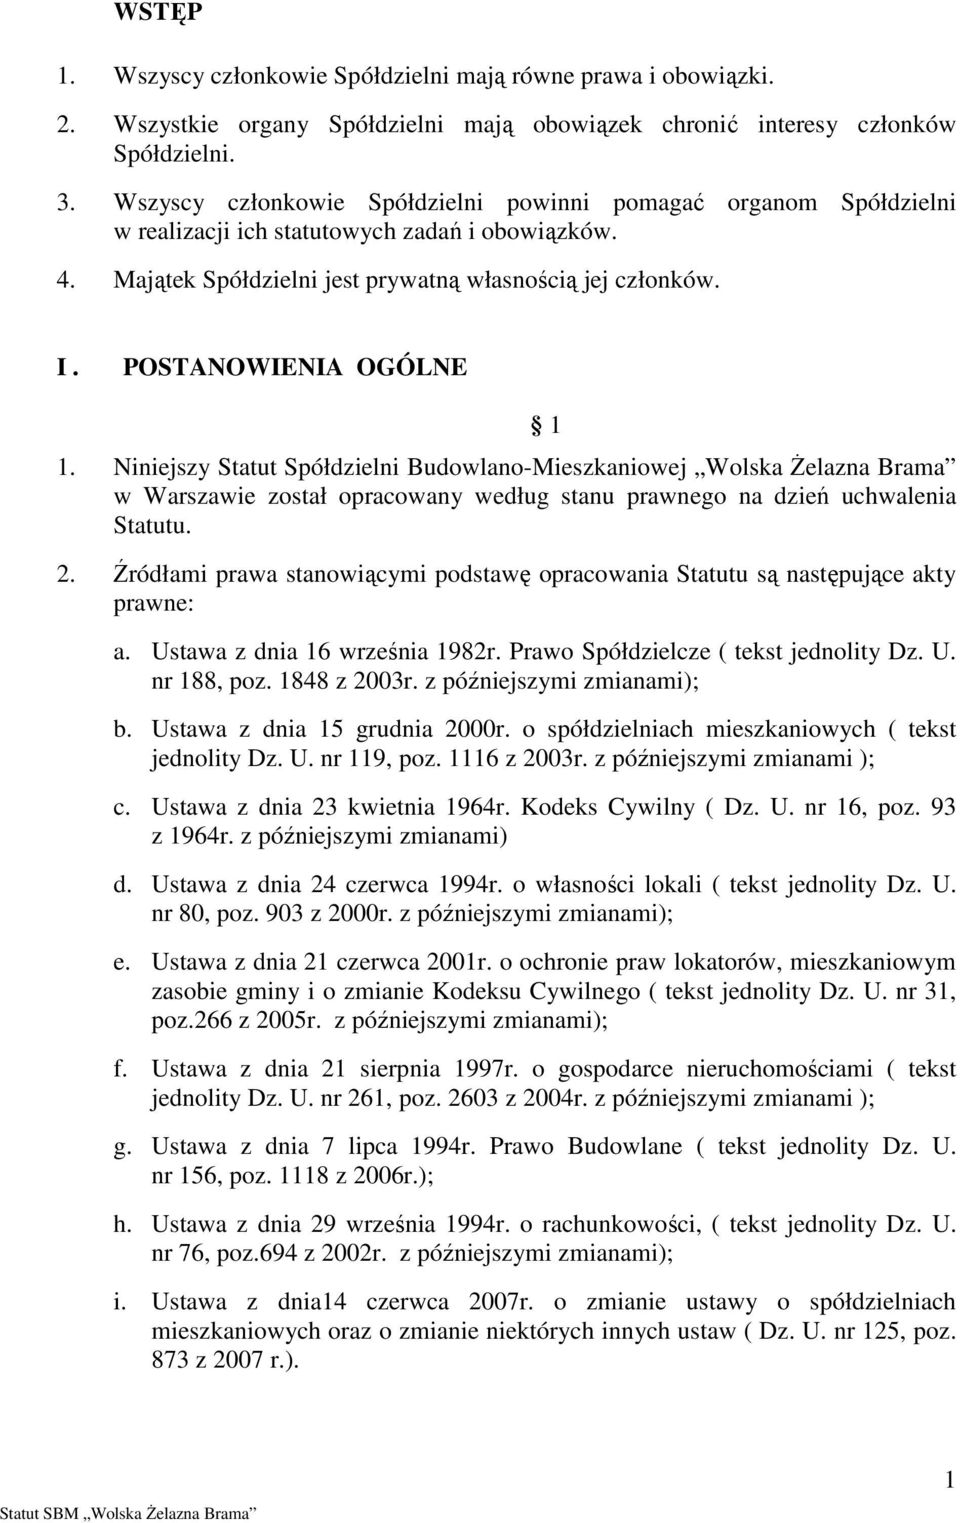 POSTANOWIENIA OGÓLNE 1. Niniejszy Statut Spółdzielni Budowlano-Mieszkaniowej Wolska śelazna Brama w Warszawie został opracowany według stanu prawnego na dzień uchwalenia Statutu. 2.